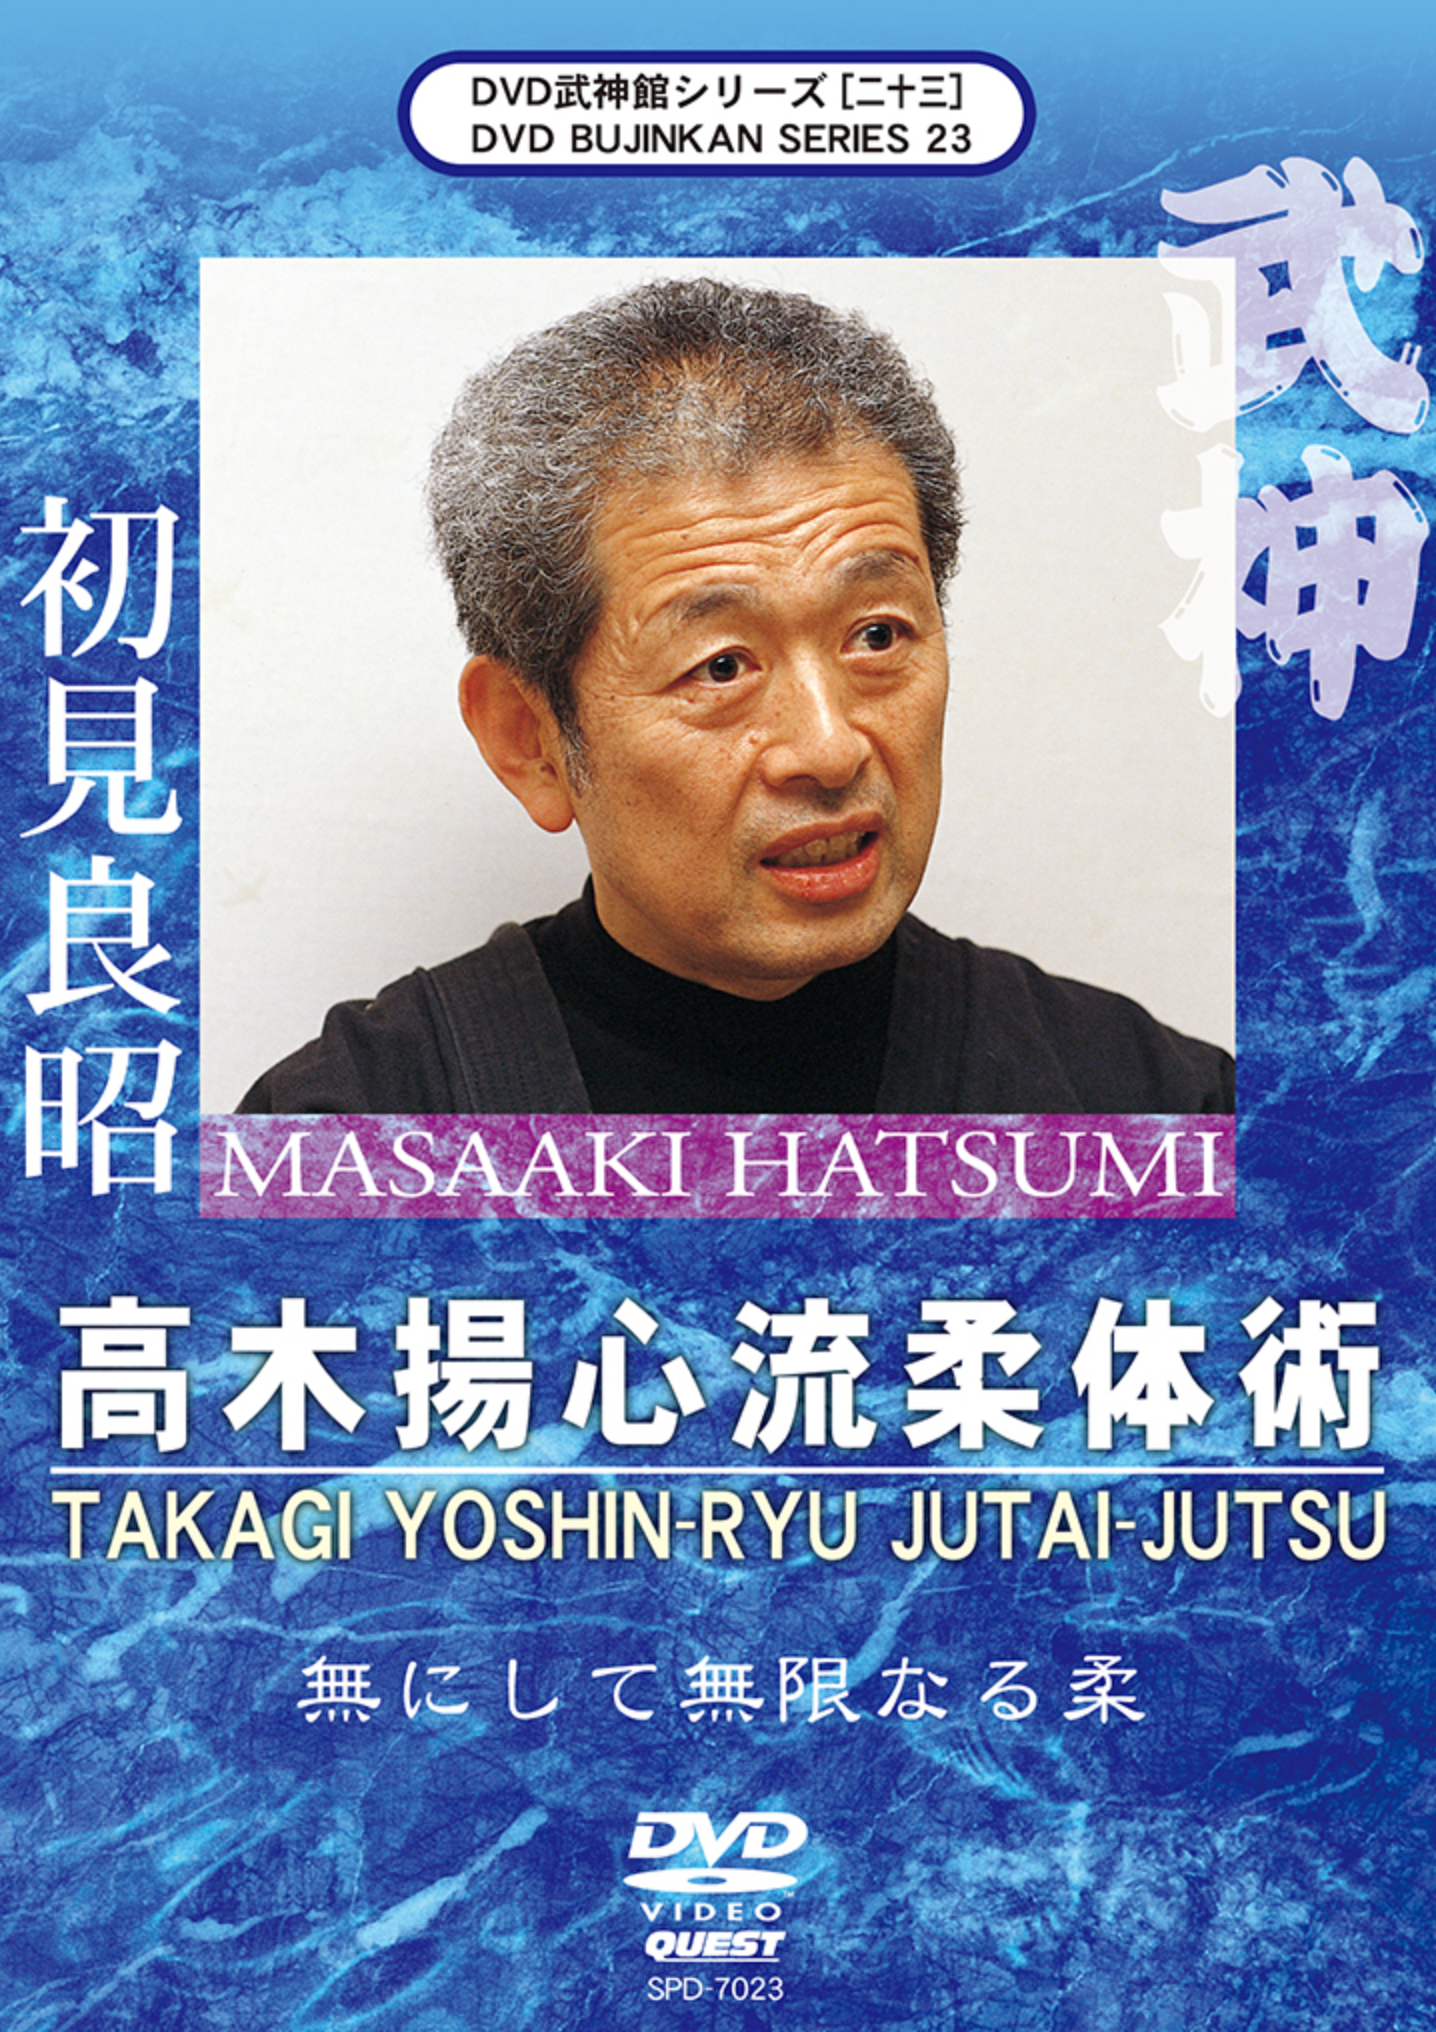 Bujinkan DVD Series 23: Takagi Yoshin Ryu Jutai Jutsu with Masaaki Hatsumi - Budovideos Inc